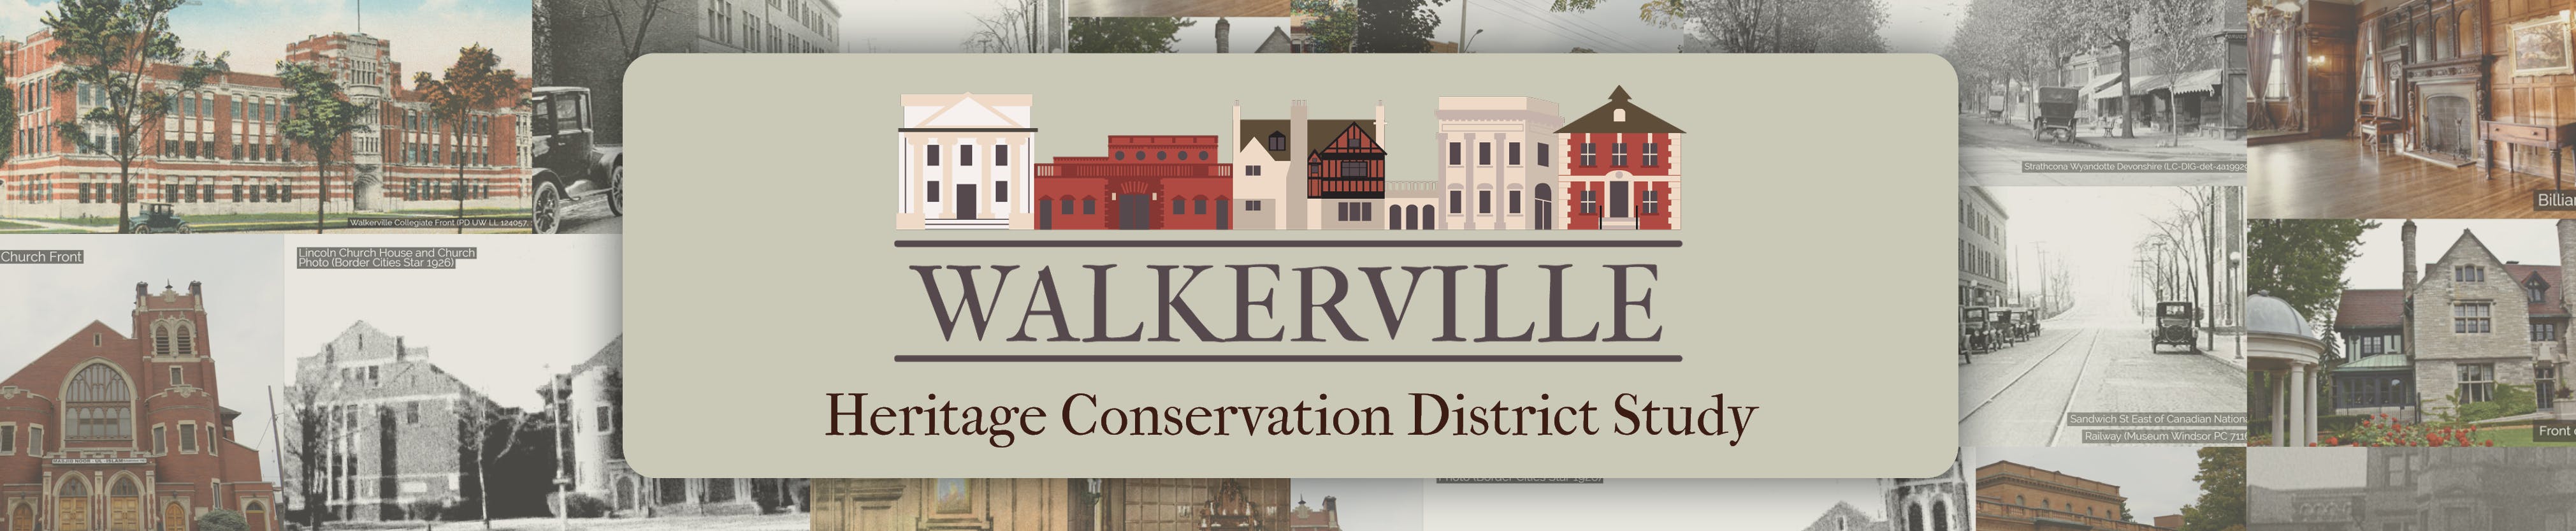 Walkerville Heritage Conservation District Study Logo Banner